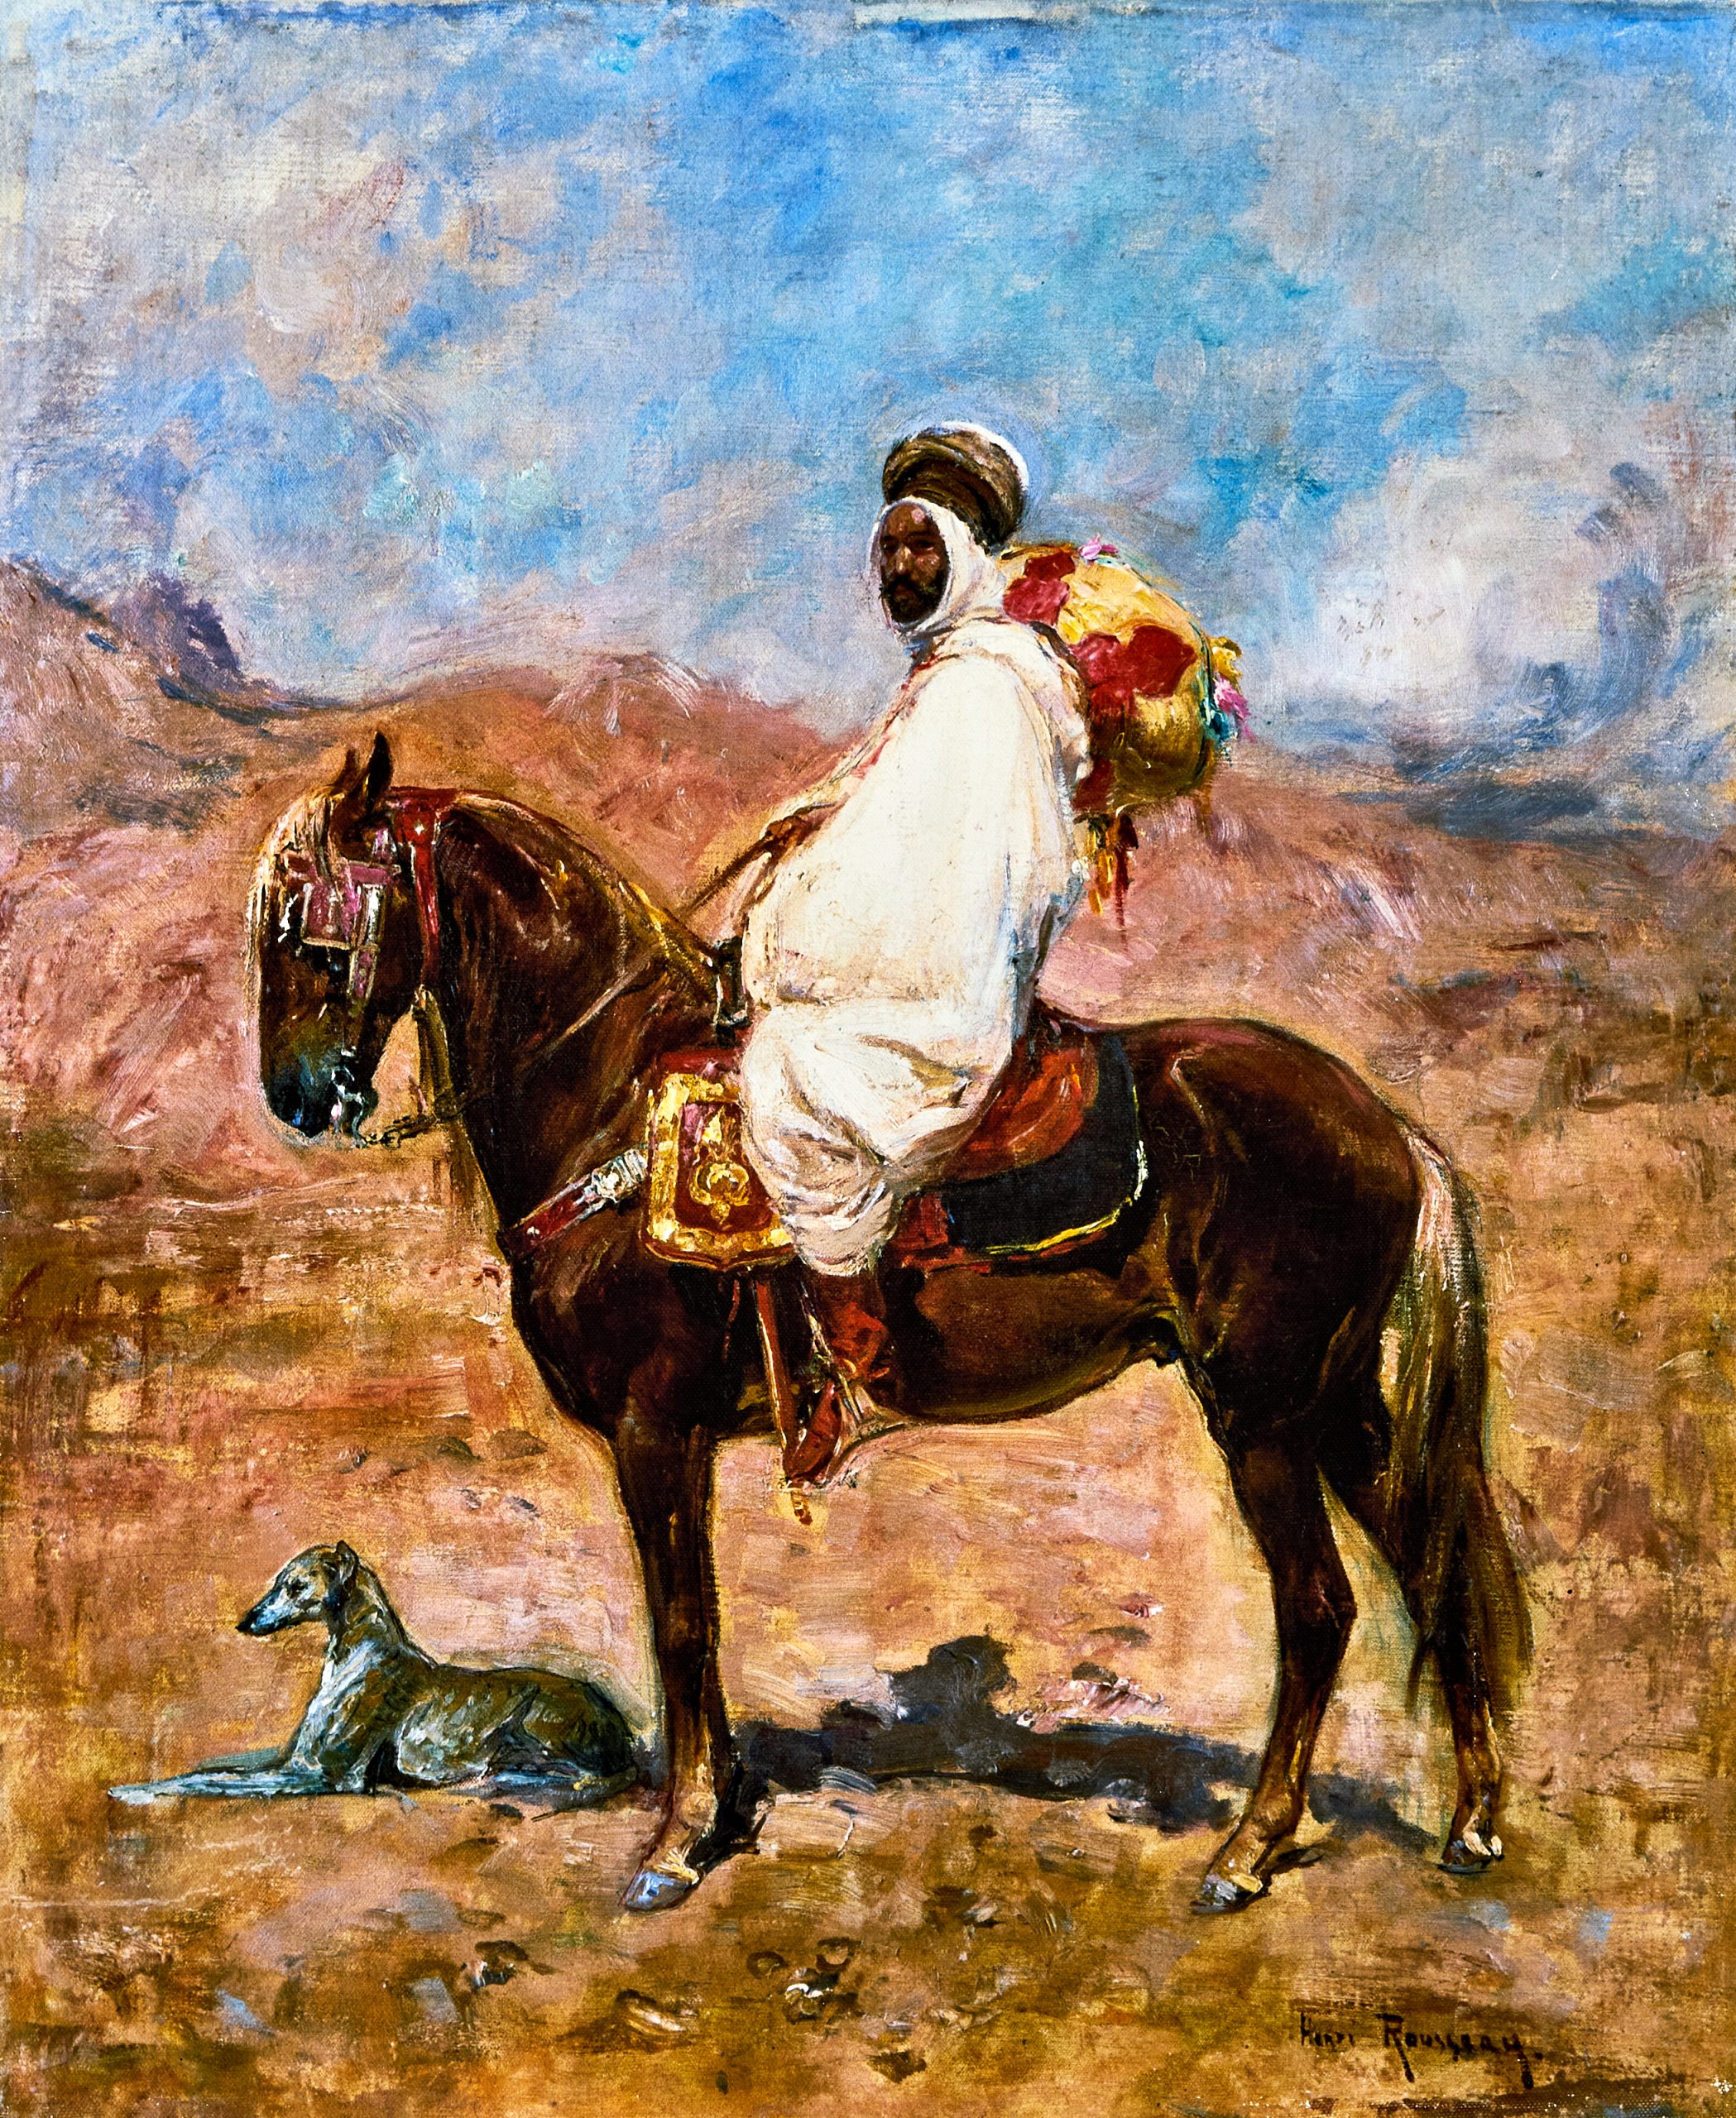 Rousseau, Henri Arabischer Reiter in einer Wüstenlandschaft